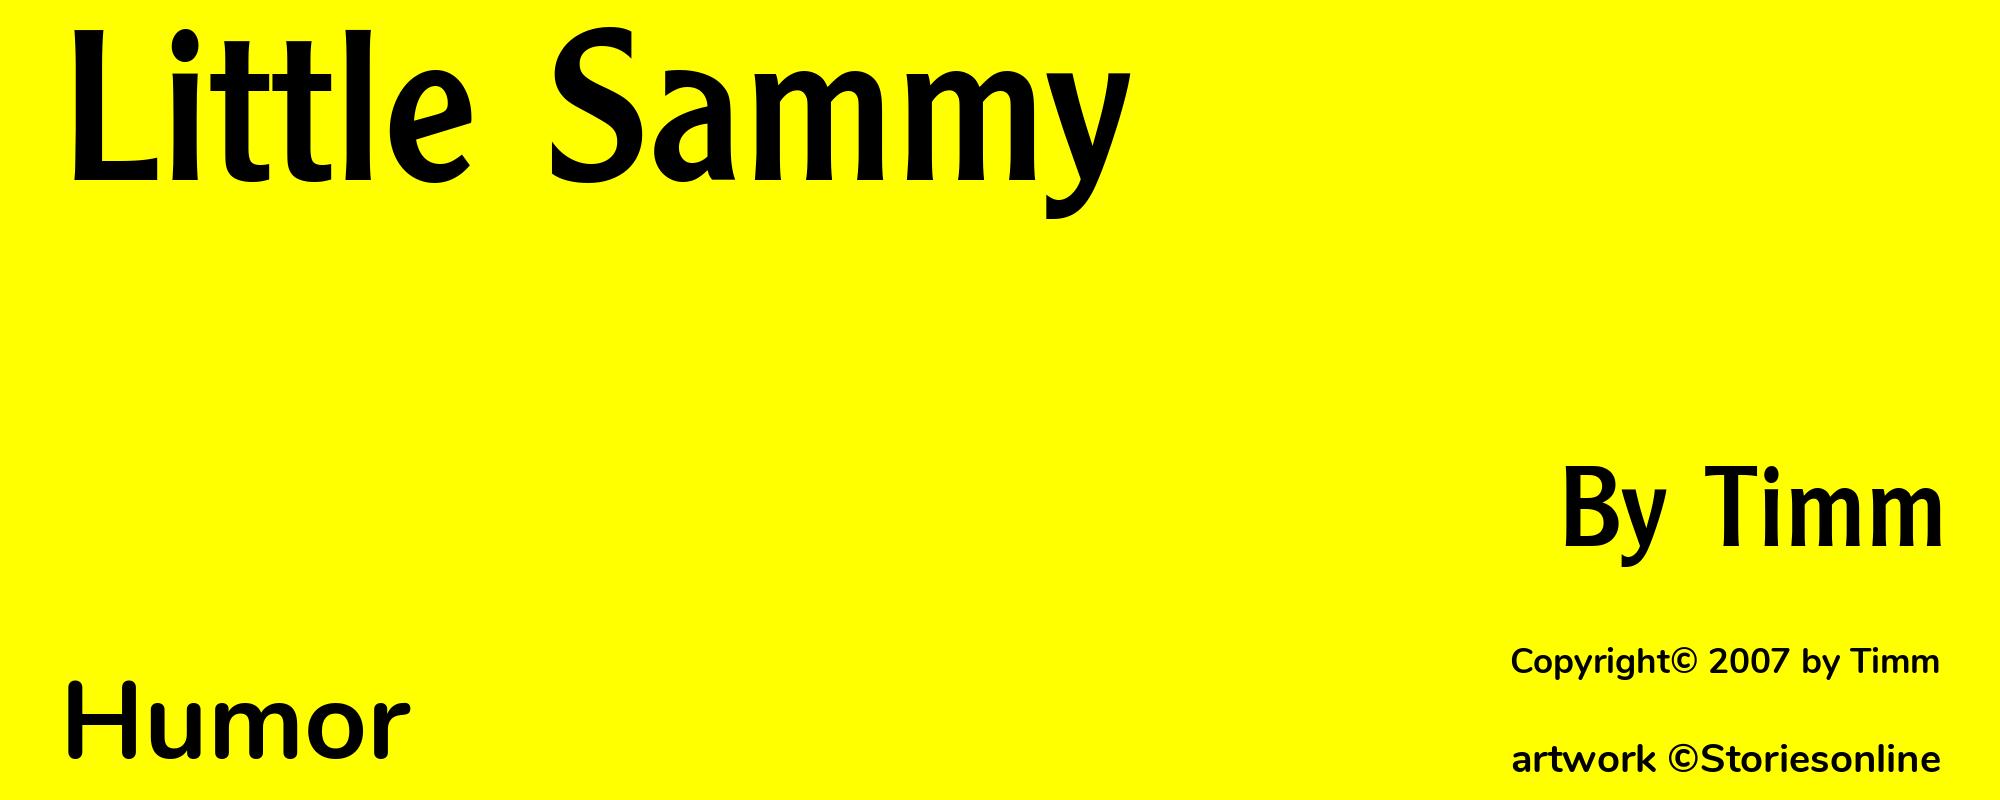 Little Sammy - Cover